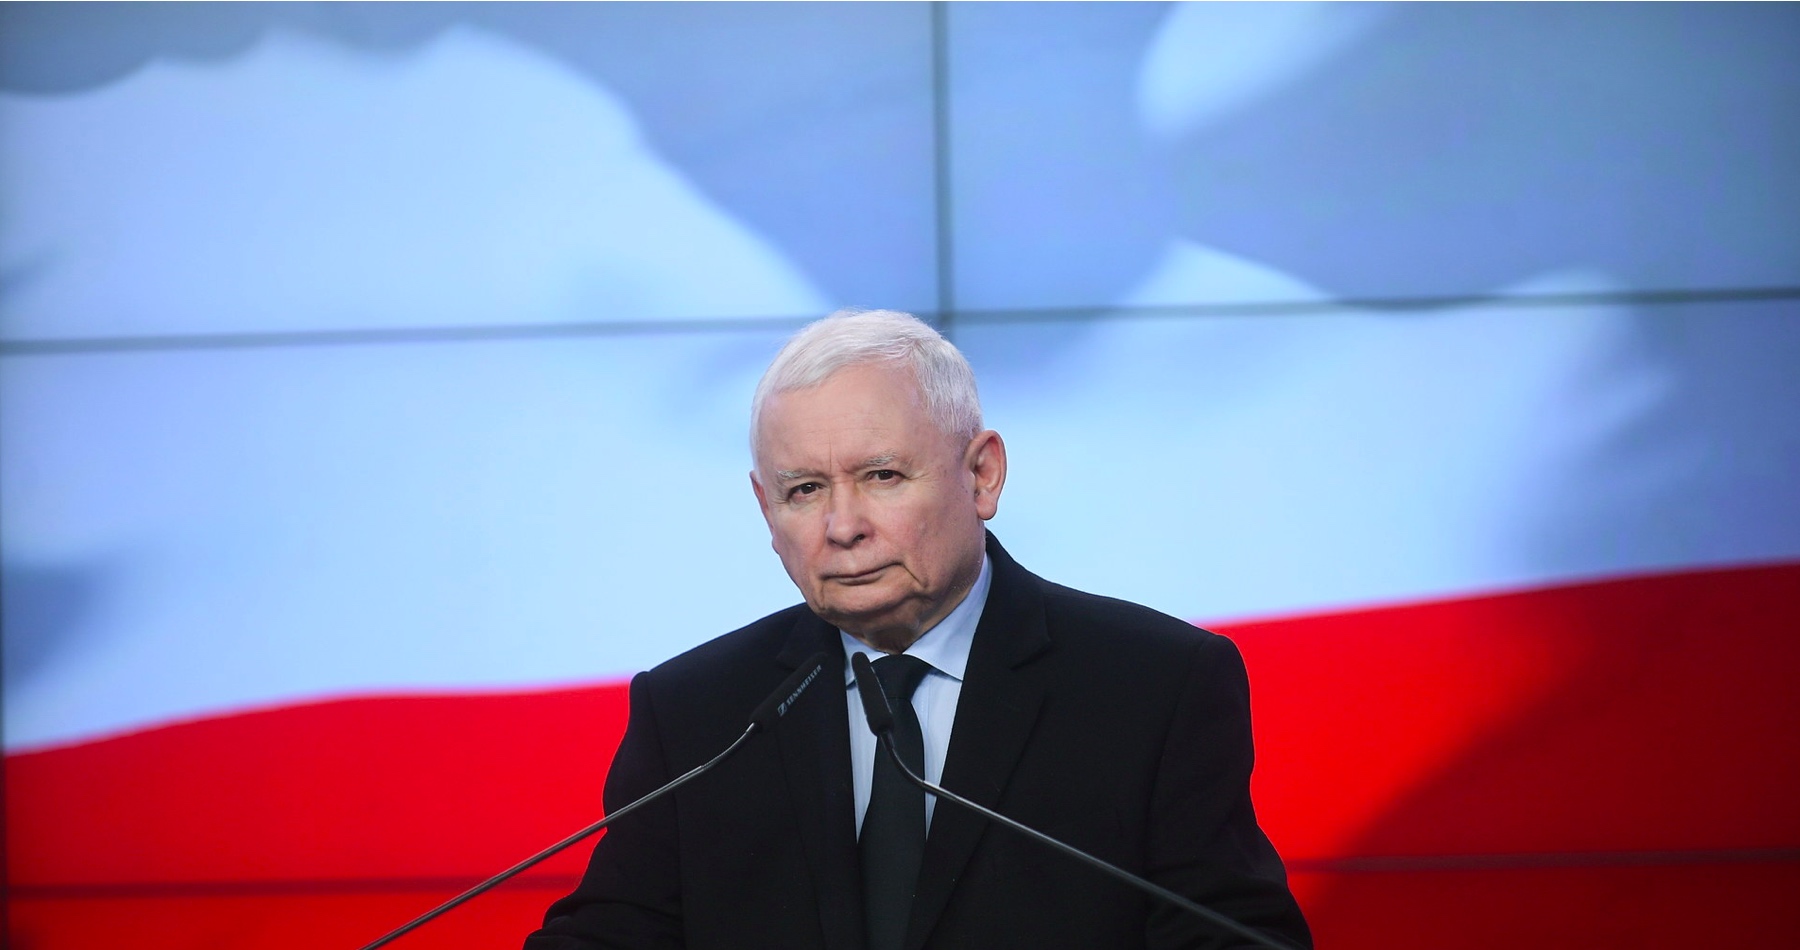 Šéf poľskej vládnej strany PiS obvinil Nemecko, že sa snaží o nadvládu v Európe. Akurát to podľa neho nerobí vojensky ako kedysi. „Európska únia spočíva v rozmanitosti a zvrchovanosti jednotlivých členských štátov,“ zdôraznil Kaczynski 